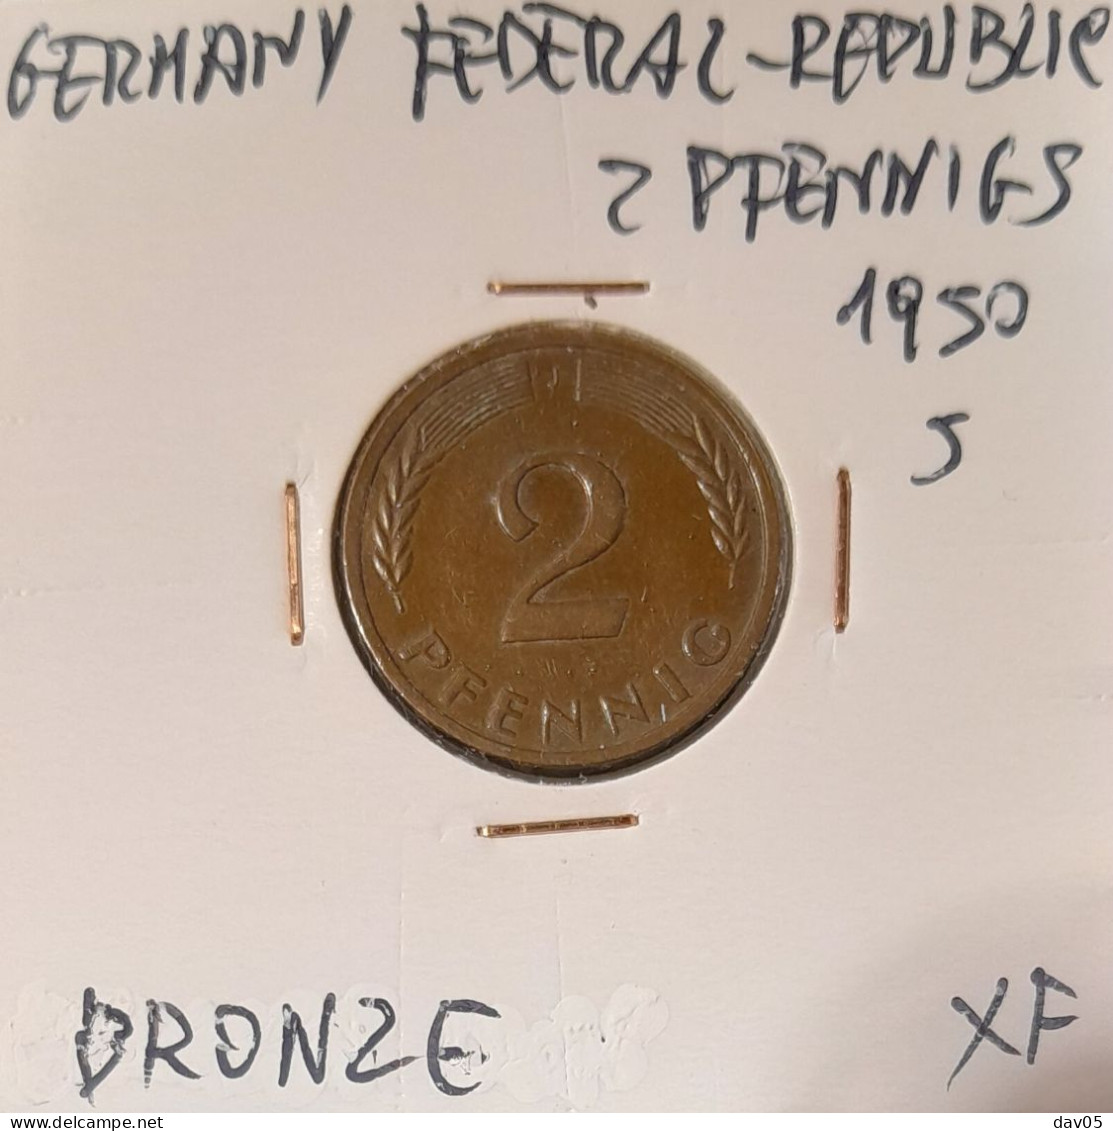 GERMANY - FEDERAL REPUBLIC - 2 PFENNIG 1950 J - XF - 2 Pfennig